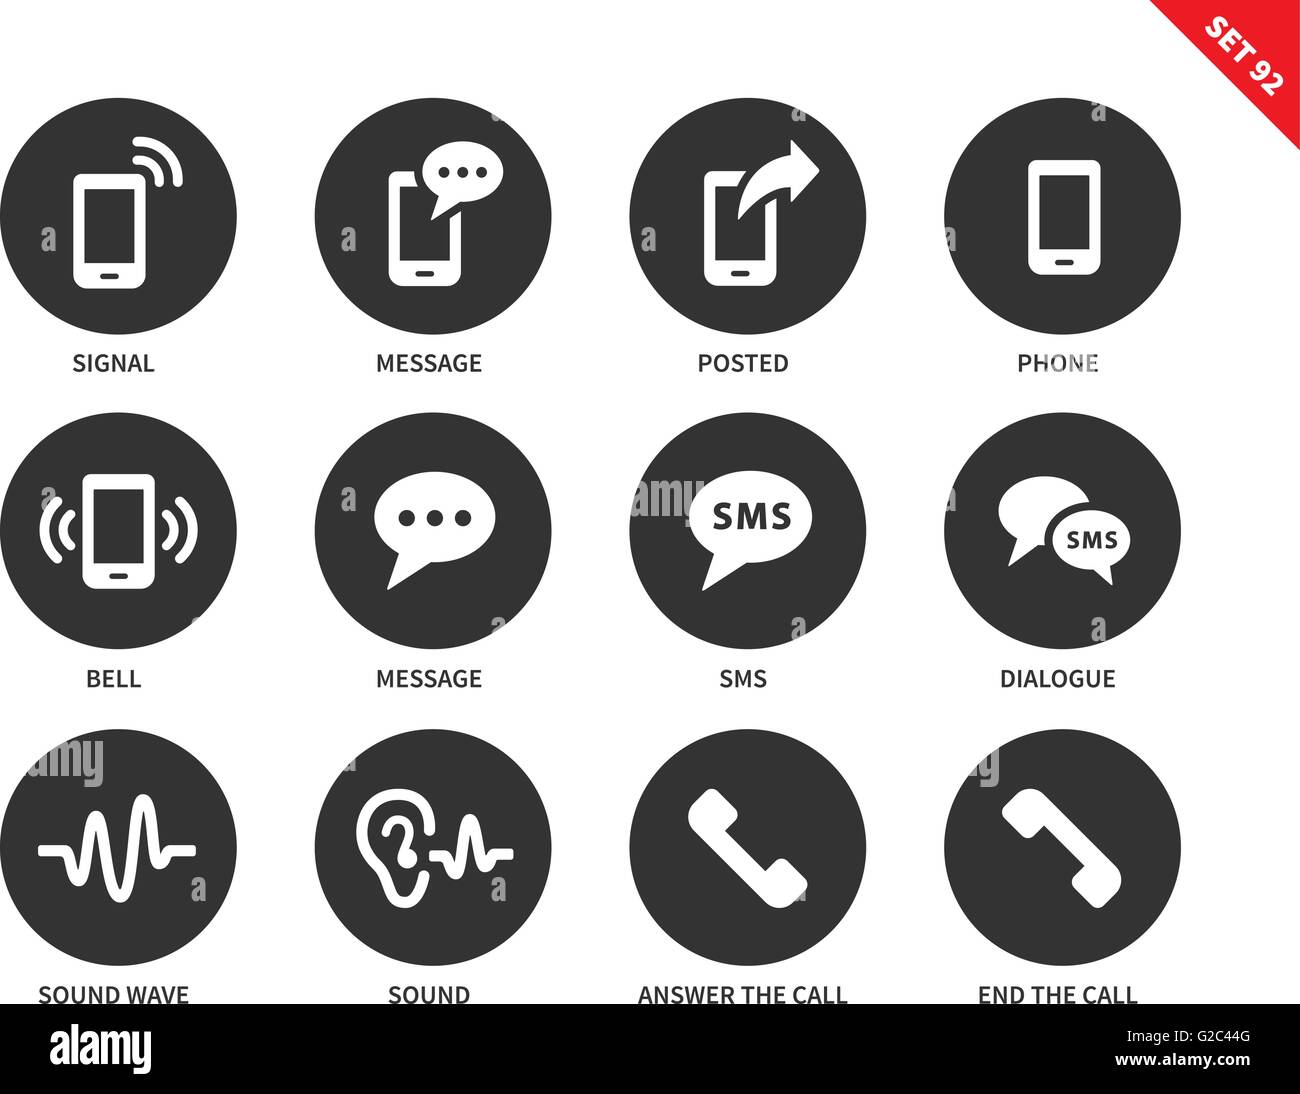 Handy-Symbole auf weißem Hintergrund Stock-Vektorgrafik - Alamy